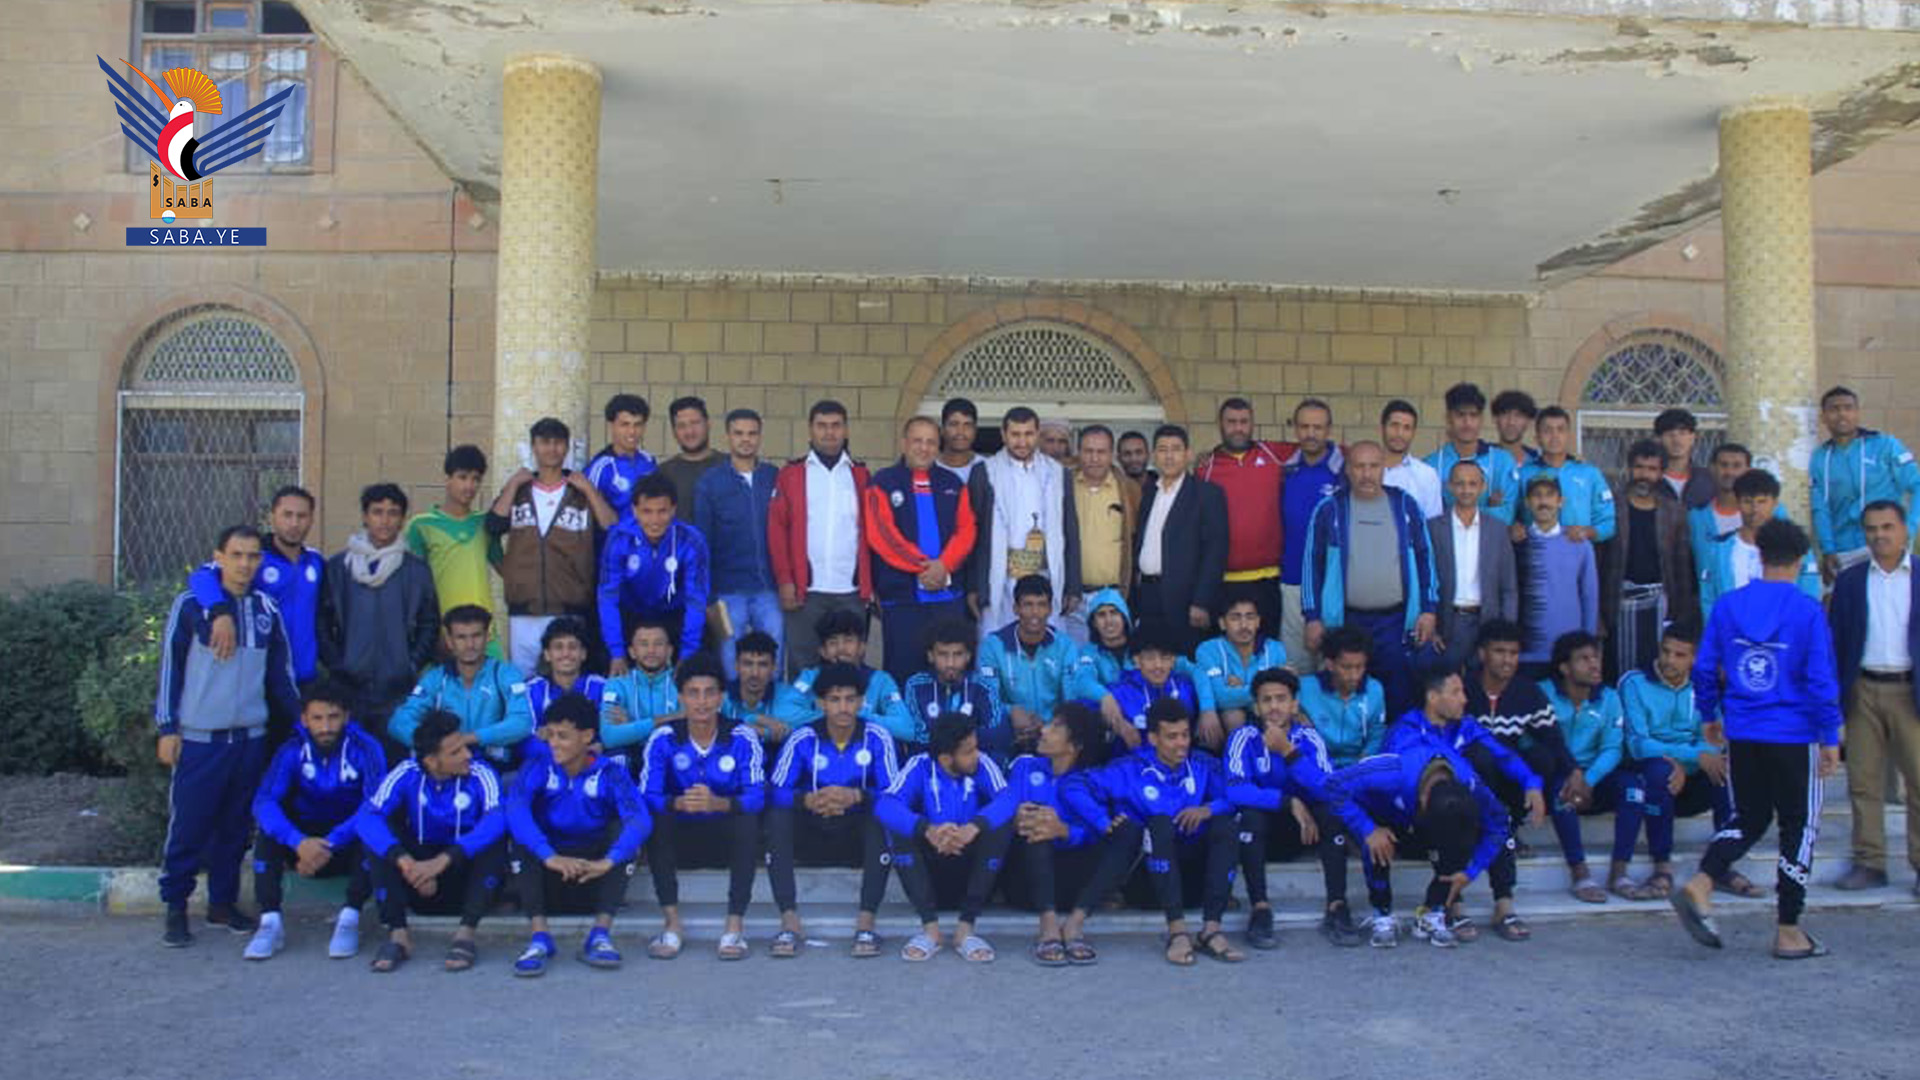 منتخبات صنعاء وإب والبيضاء تزور مركز الطب الرياضي